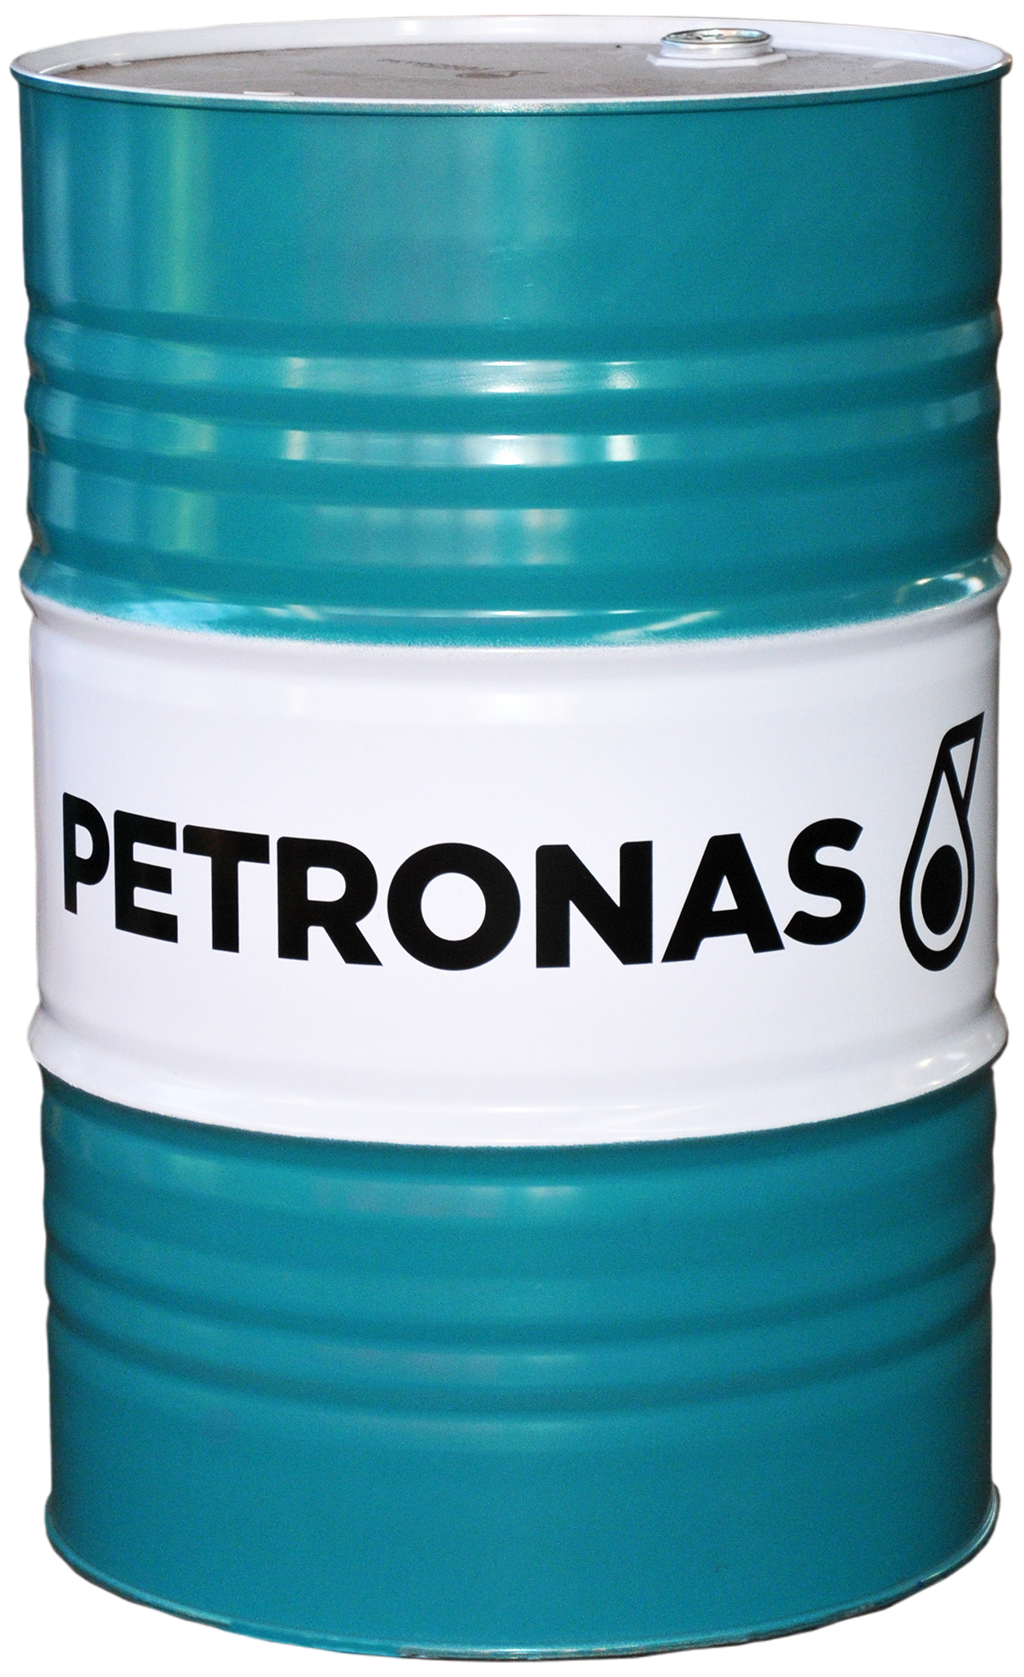 P303P1108-208 Petronas Hydraulic HLPD Serie is een gamma van hydrauliekoliën met zeer hoge prestaties en bescherming tegen slijtage.